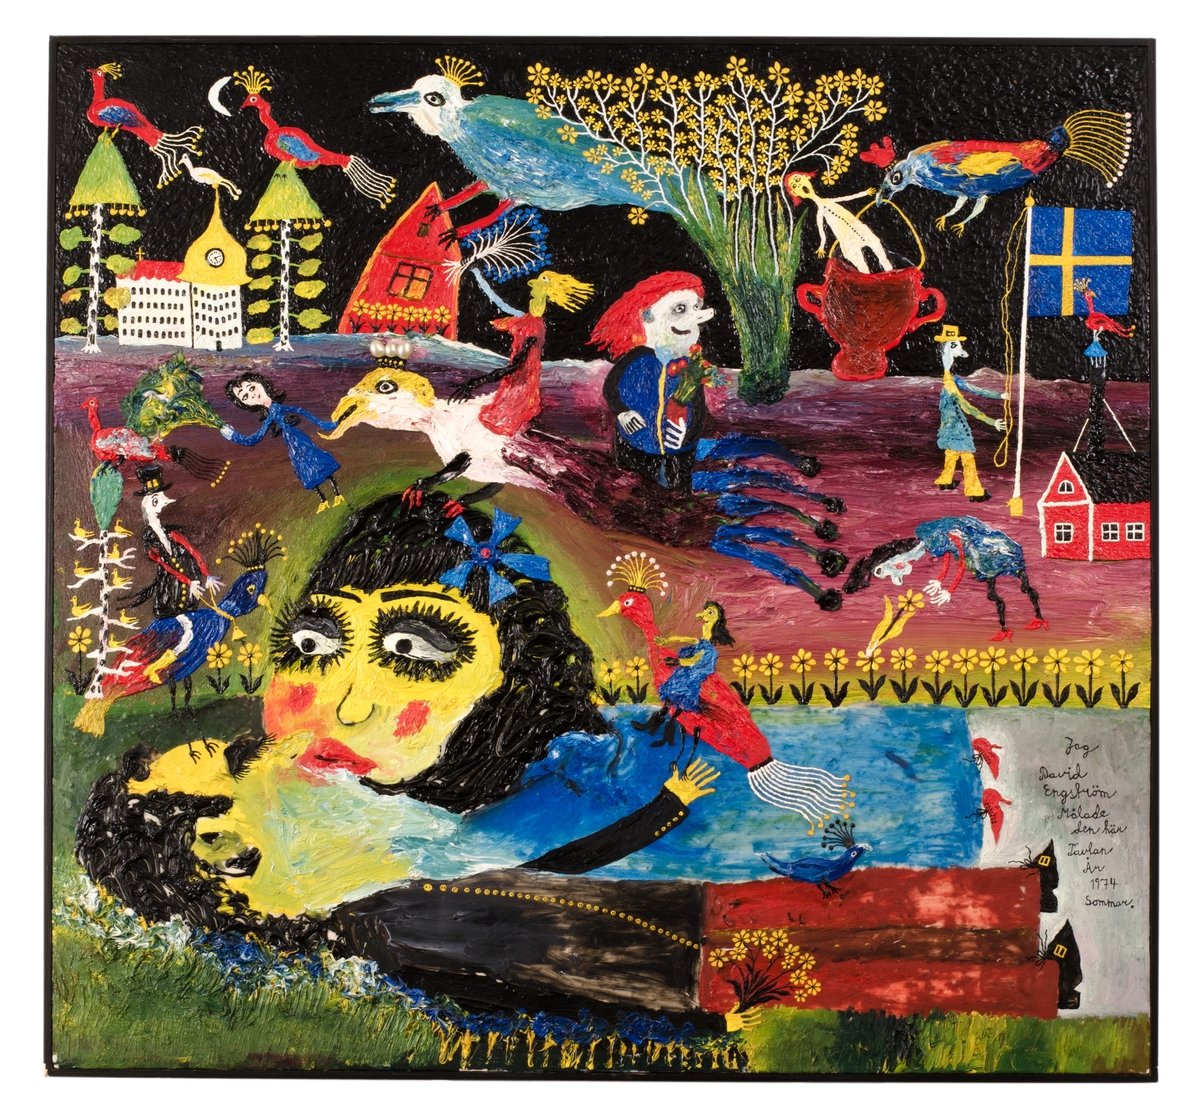 Fantasifull skildring i Chagalls anda av fåglar, blommor, hus, kärlekspar och man som hissar svenska flaggan.